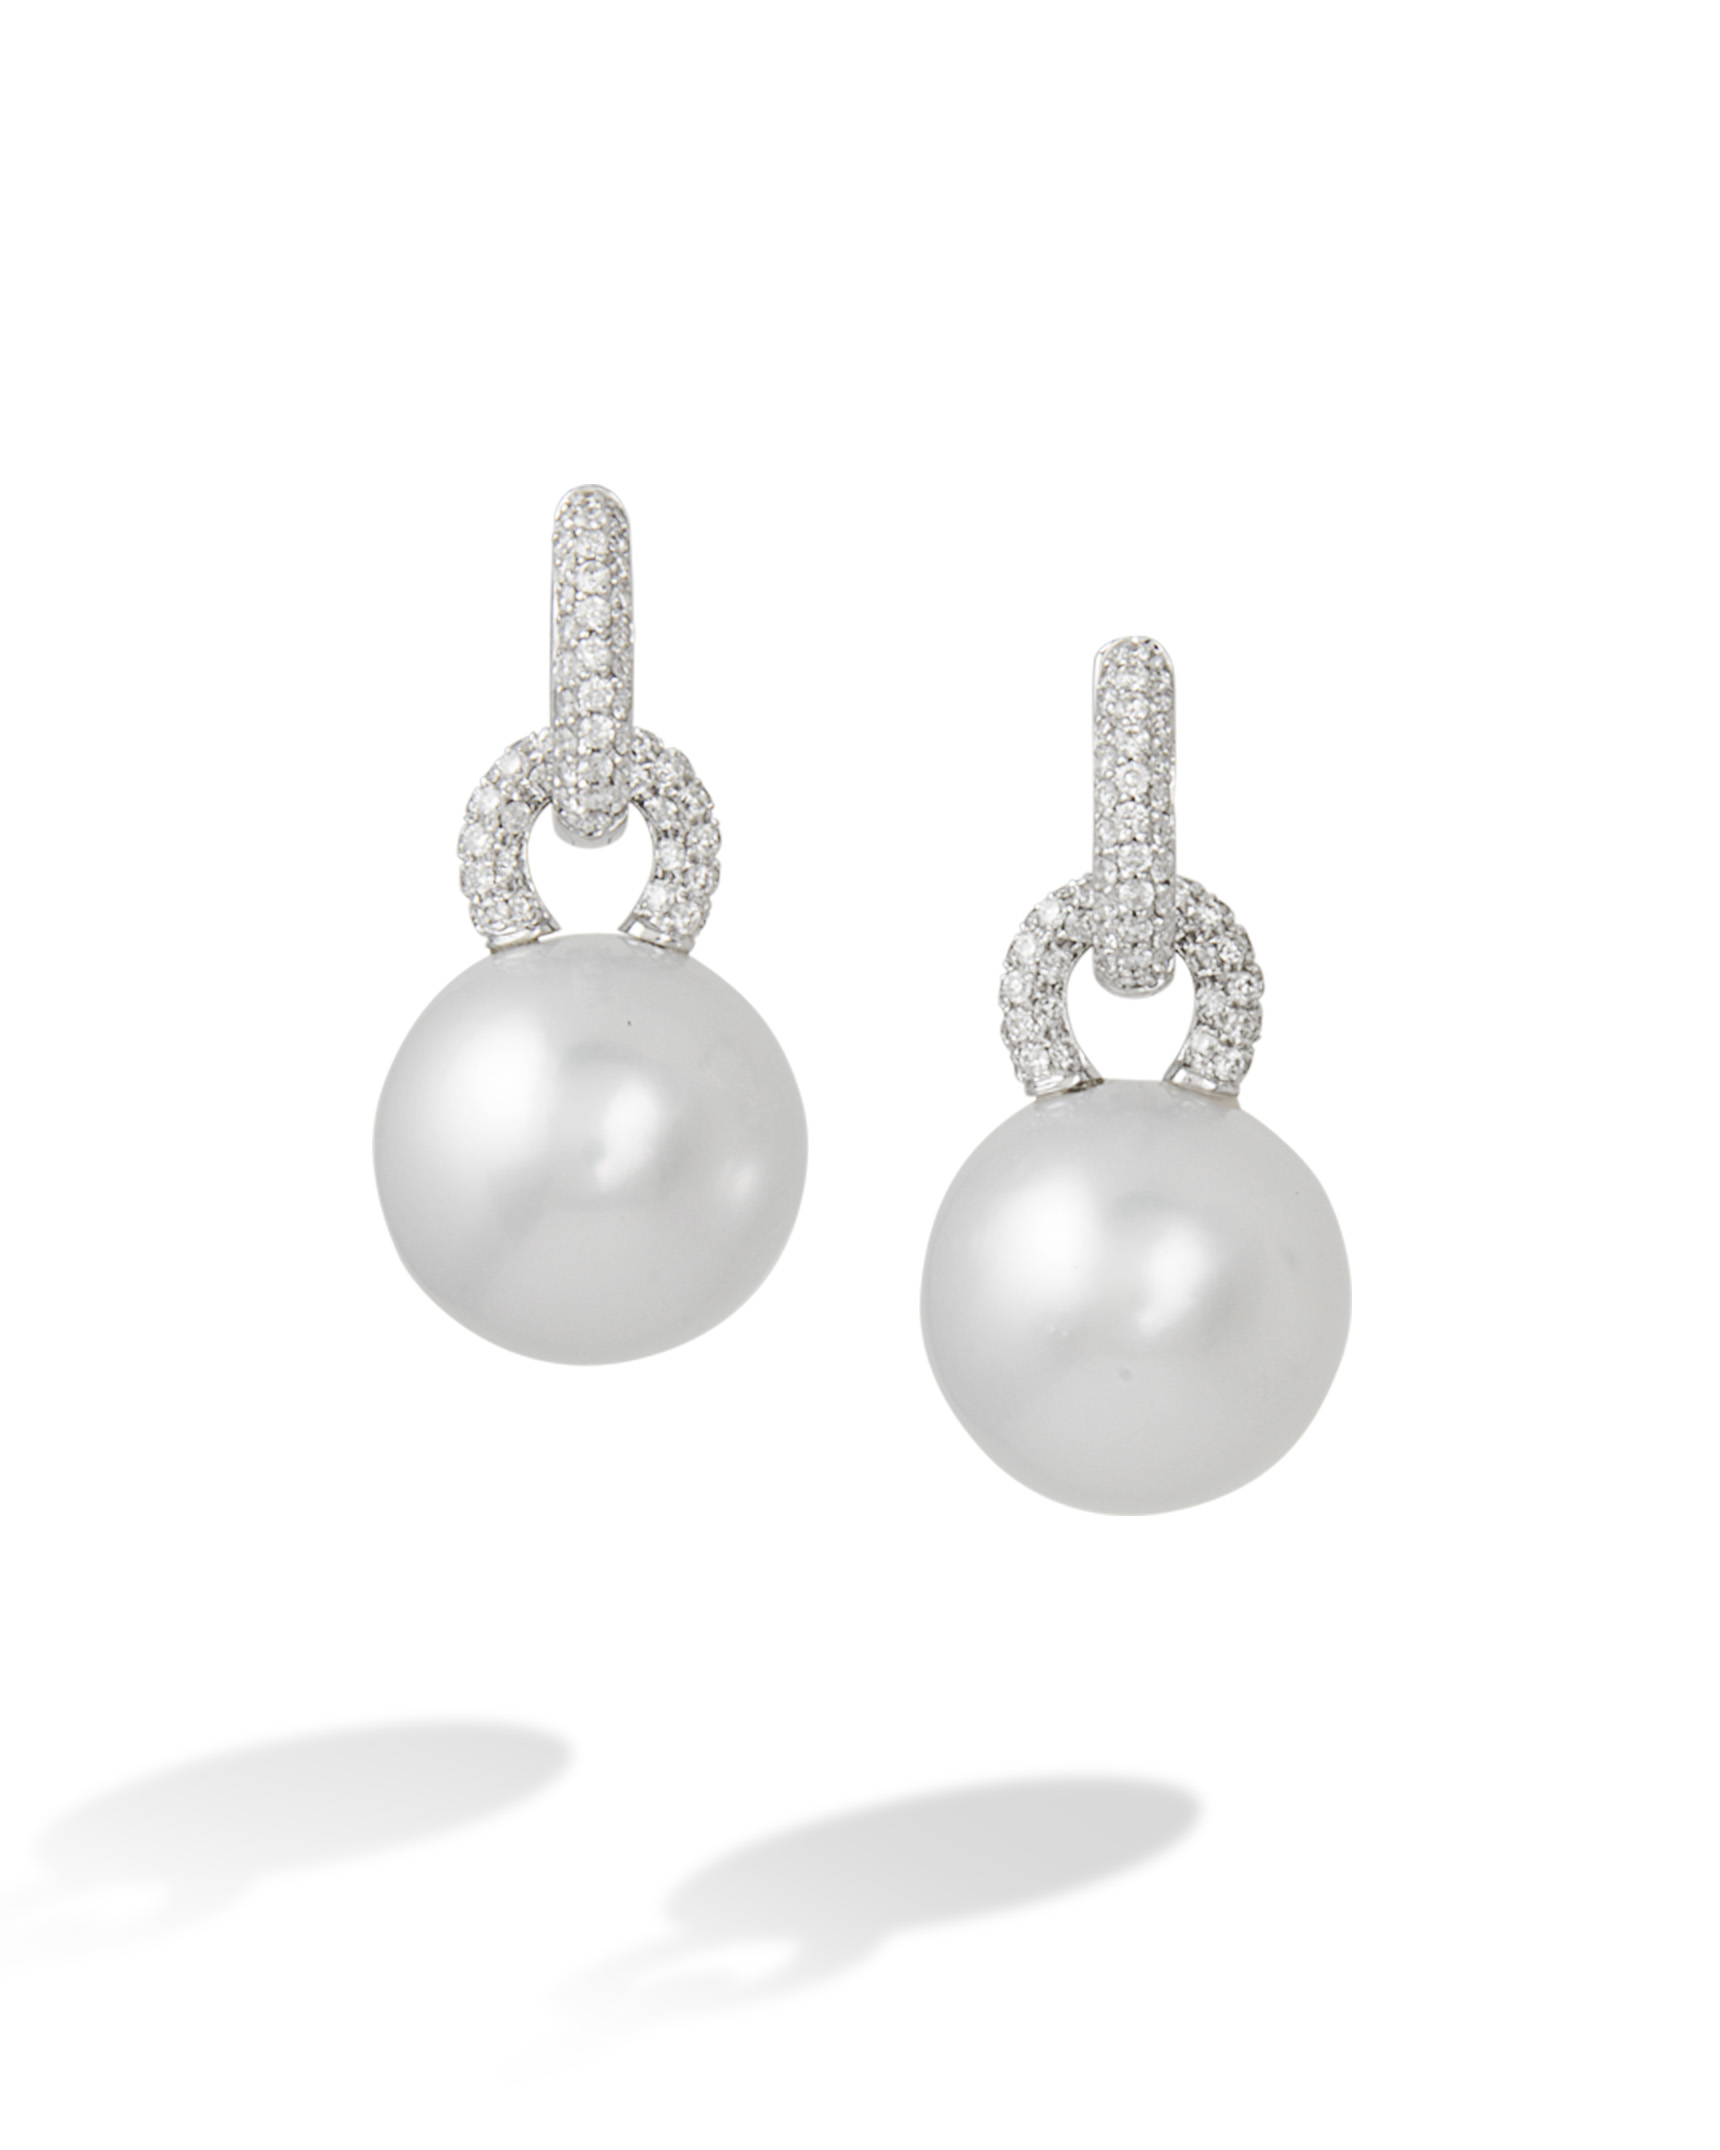 Southsea Pearl Earrings